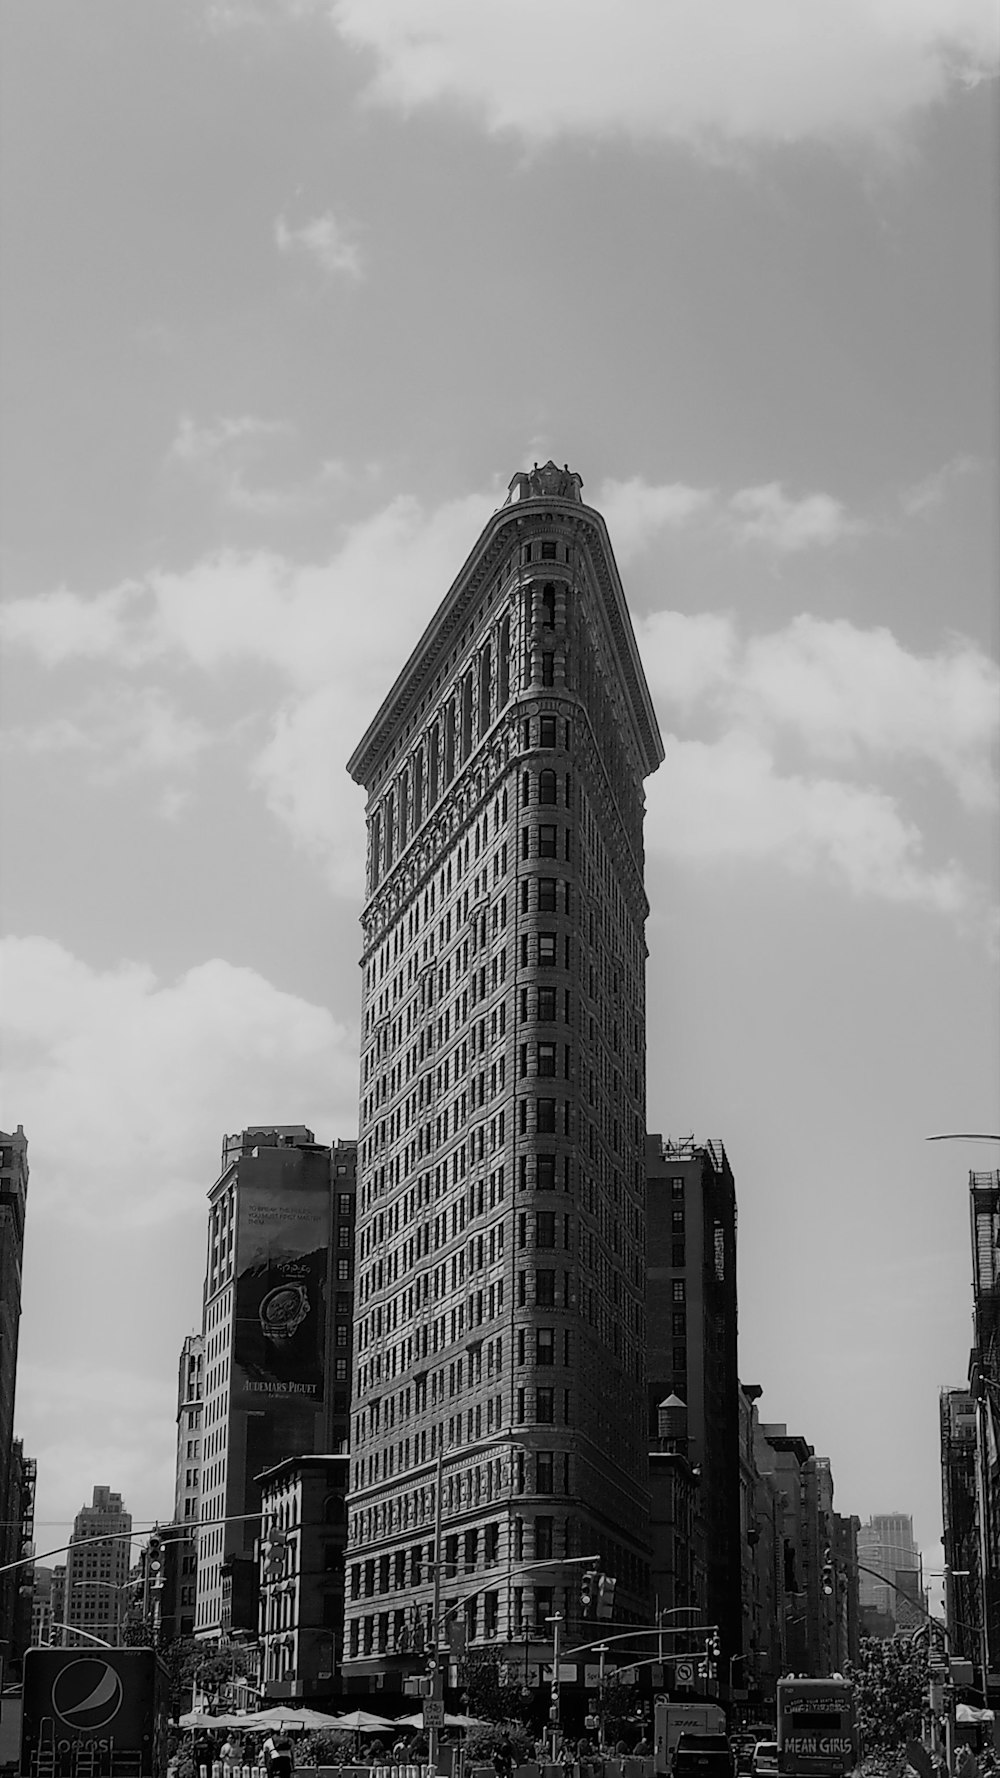 Photographie en niveaux de gris de bâtiments